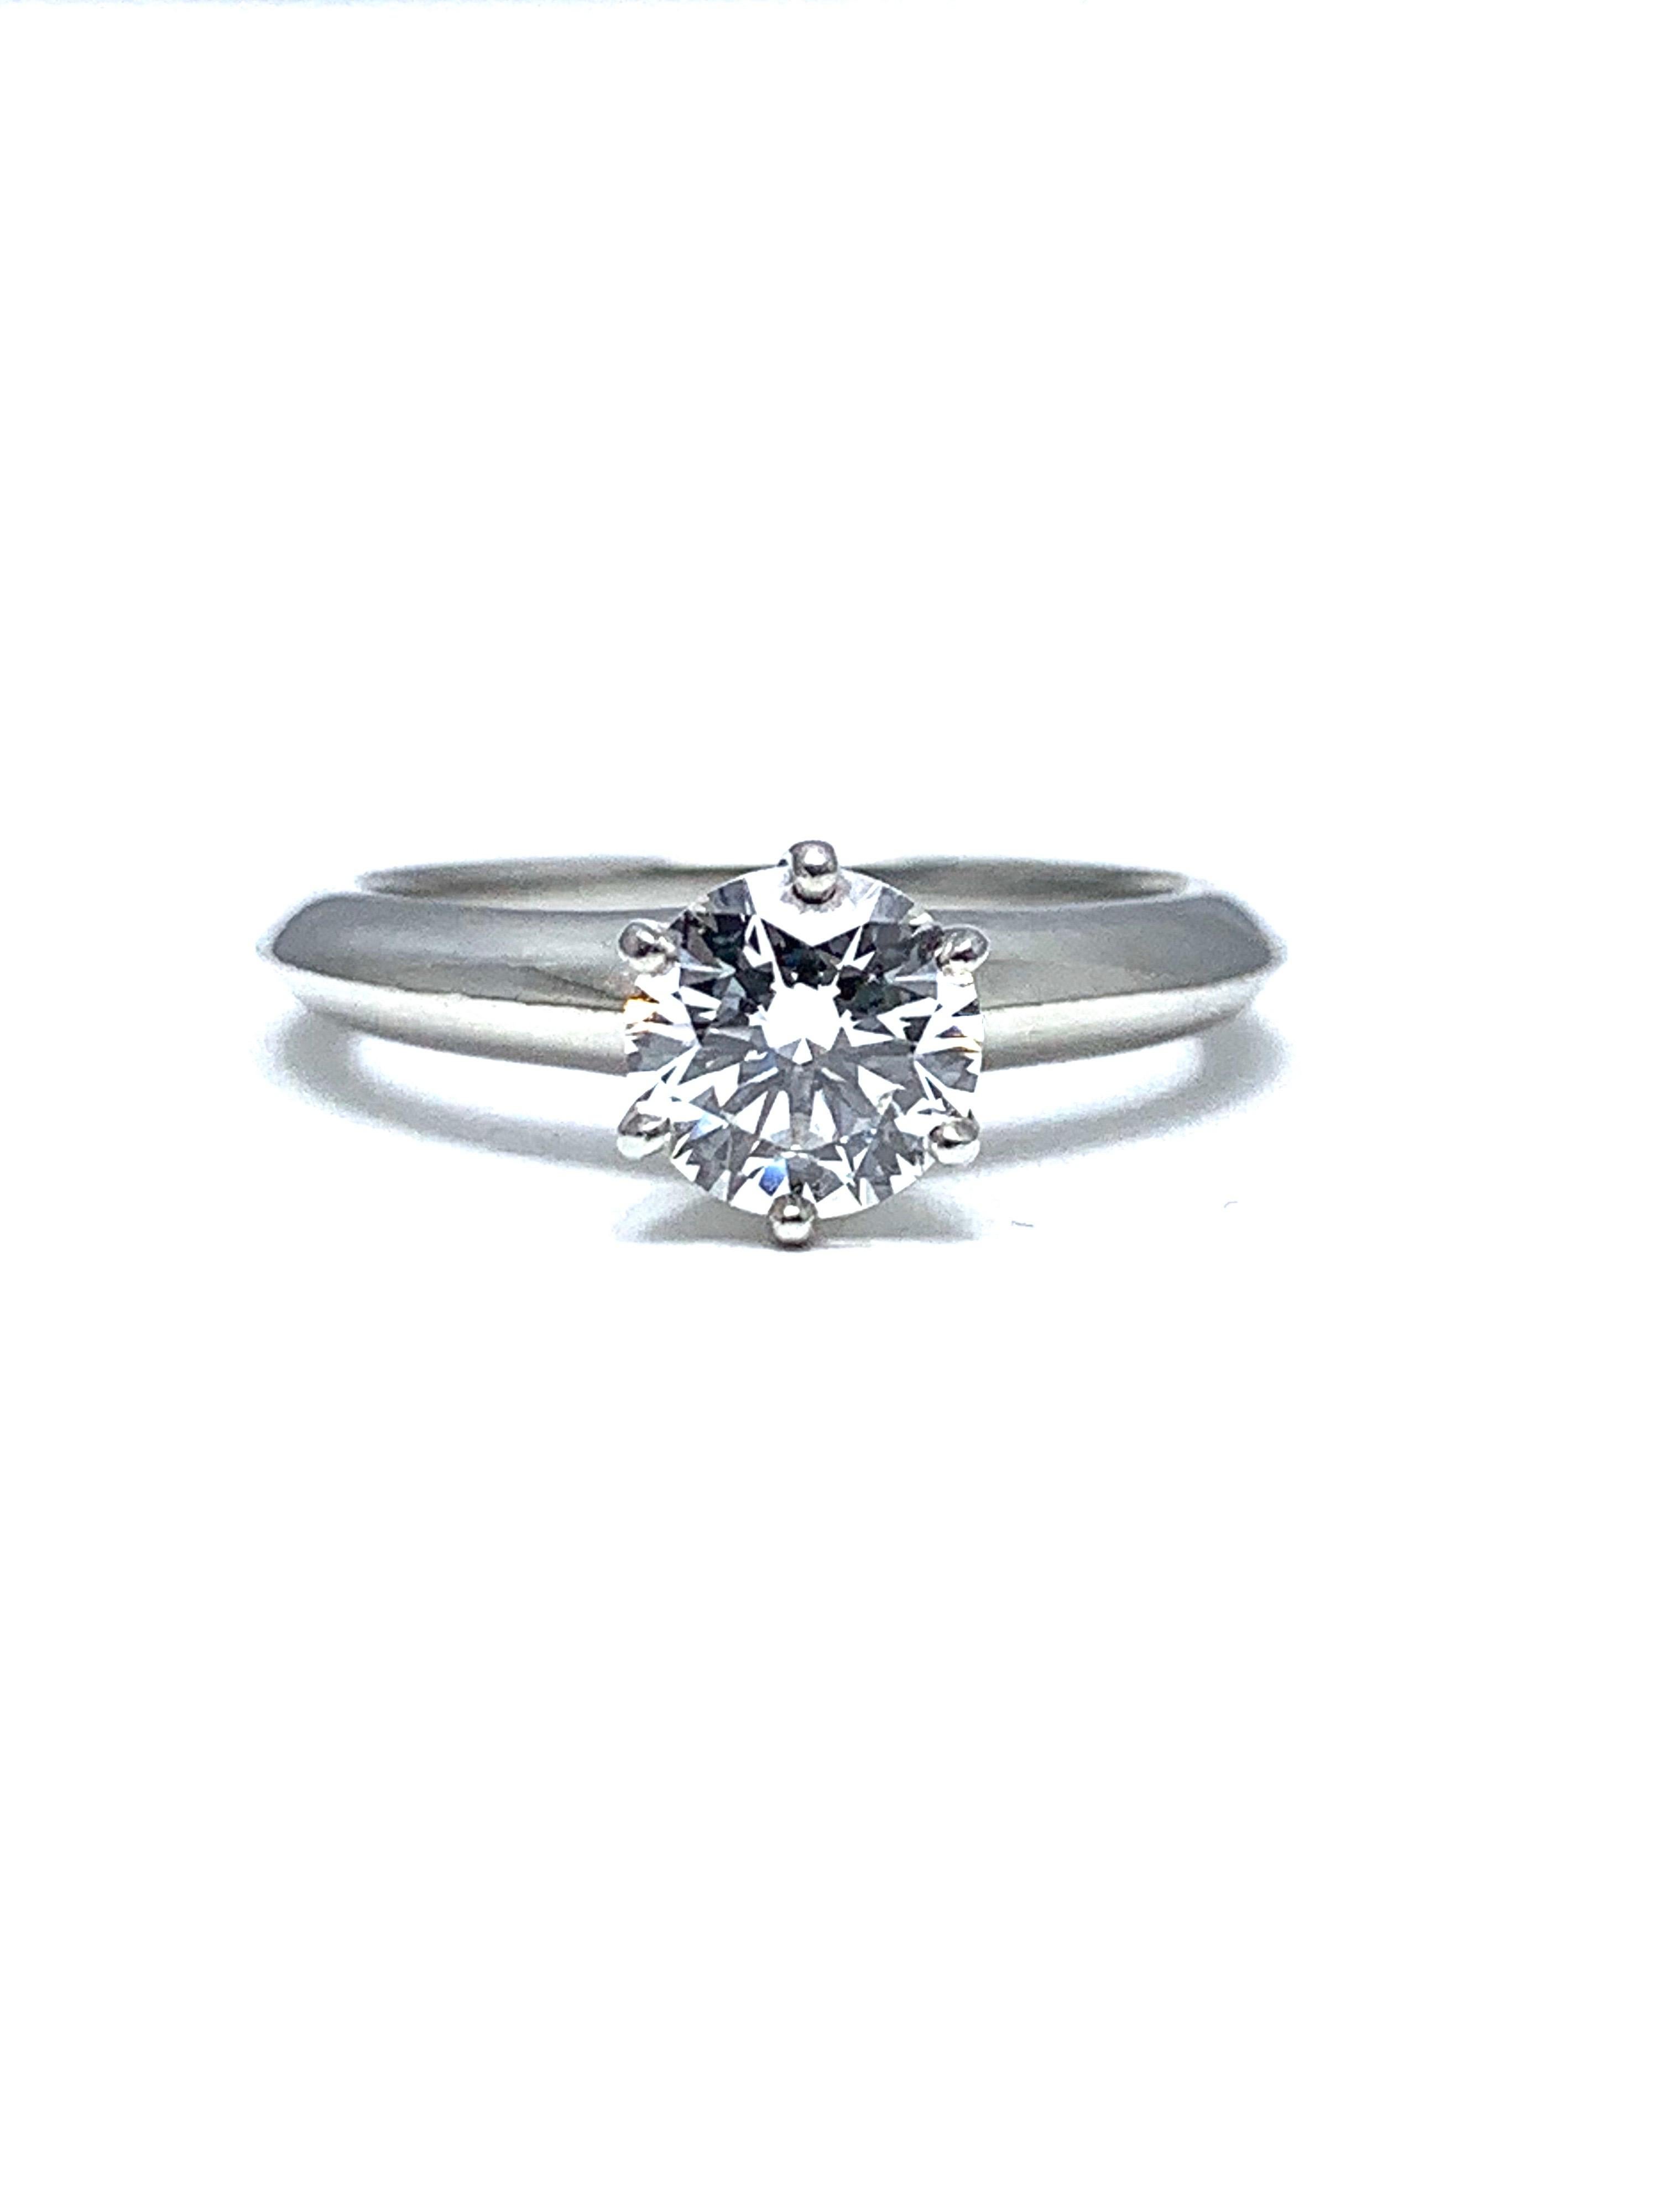 Magnifique bague en platine de Tiffany & Co. avec solitaire en diamant rond et brillant.  Le diamant est serti dans une tête à six griffes sur une tige en lame de couteau.  Le diamant est de 0,89 ct, de couleur E et de pureté VS1.  

Signature : 